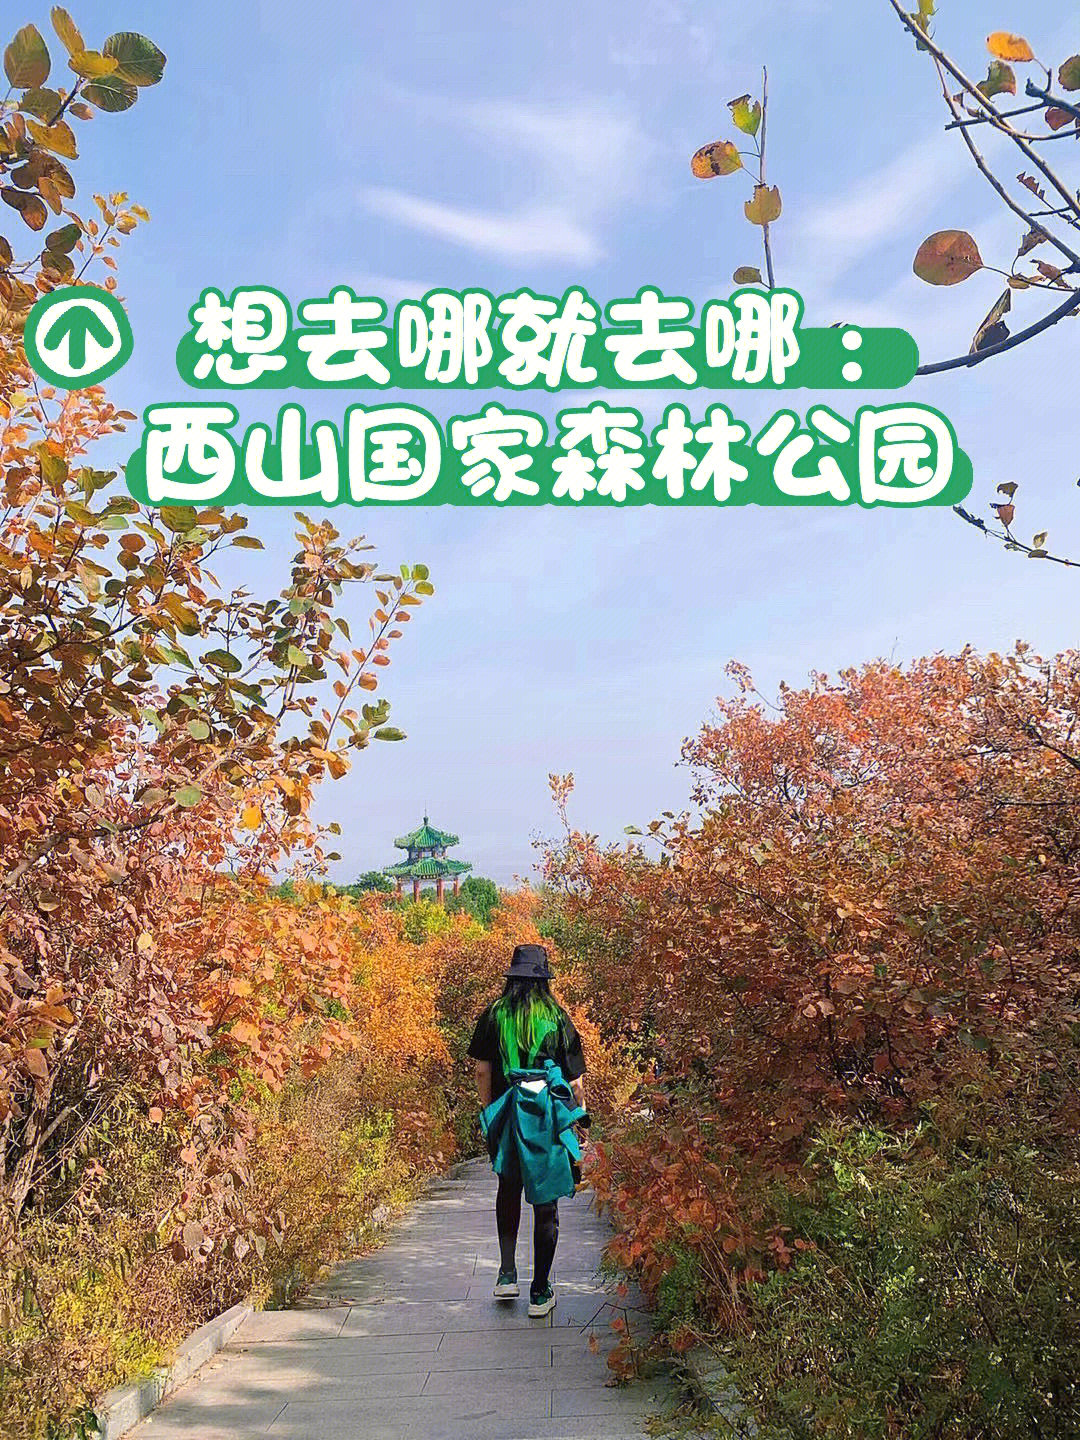 北京西山森林公园游记图片